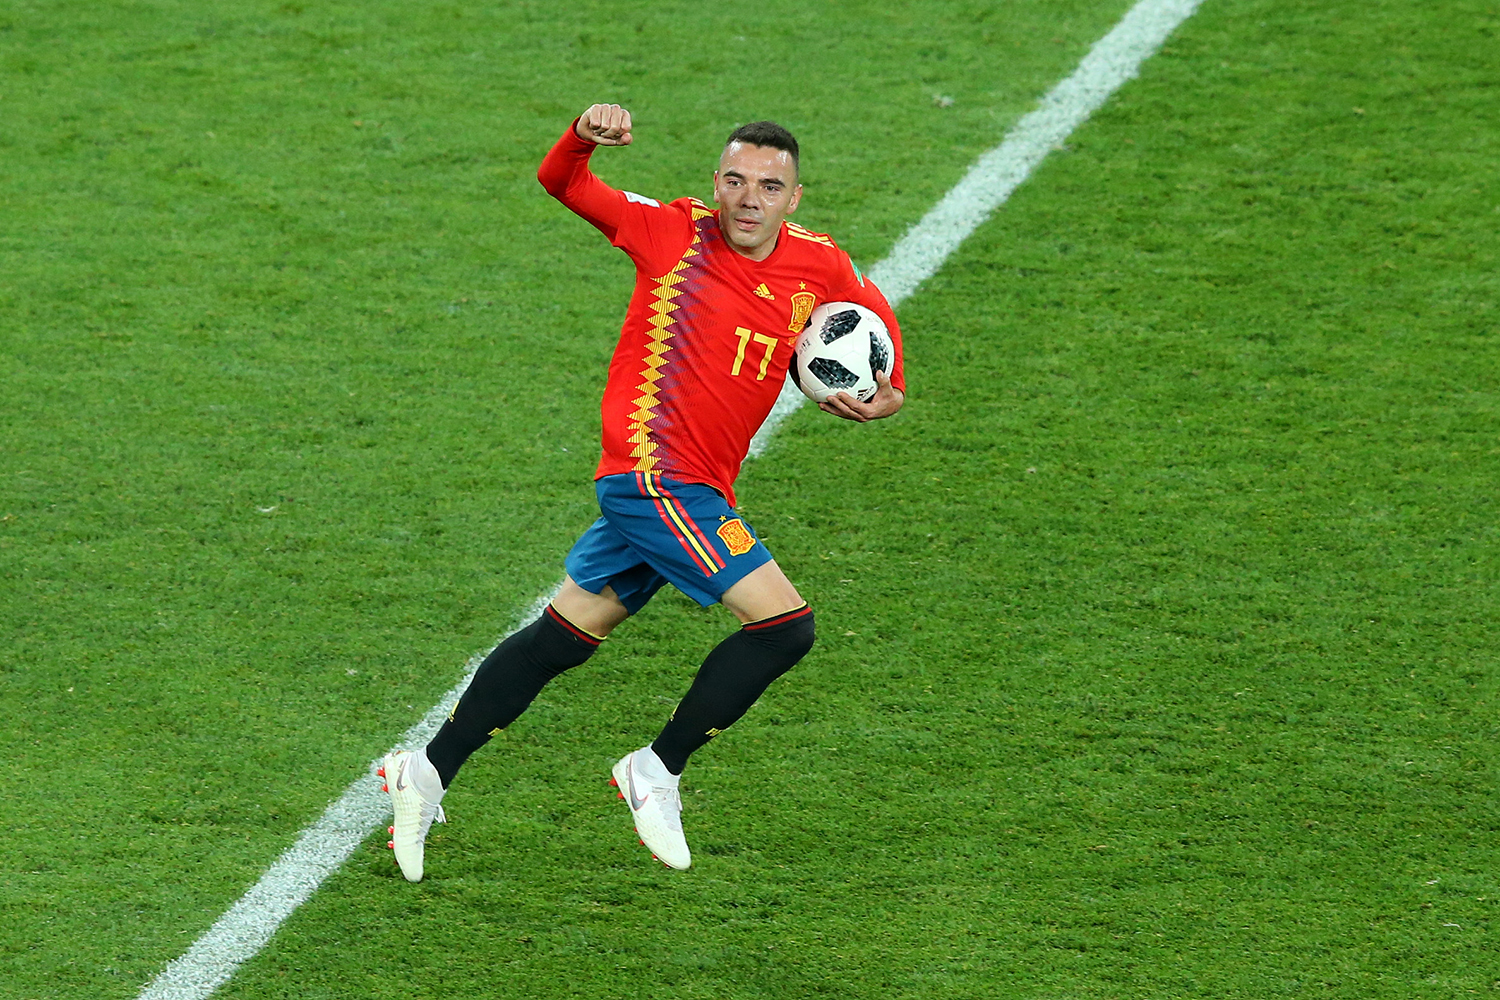 Saiba como assistir a Espanha x Rússia pela Copa do Mundo 2018